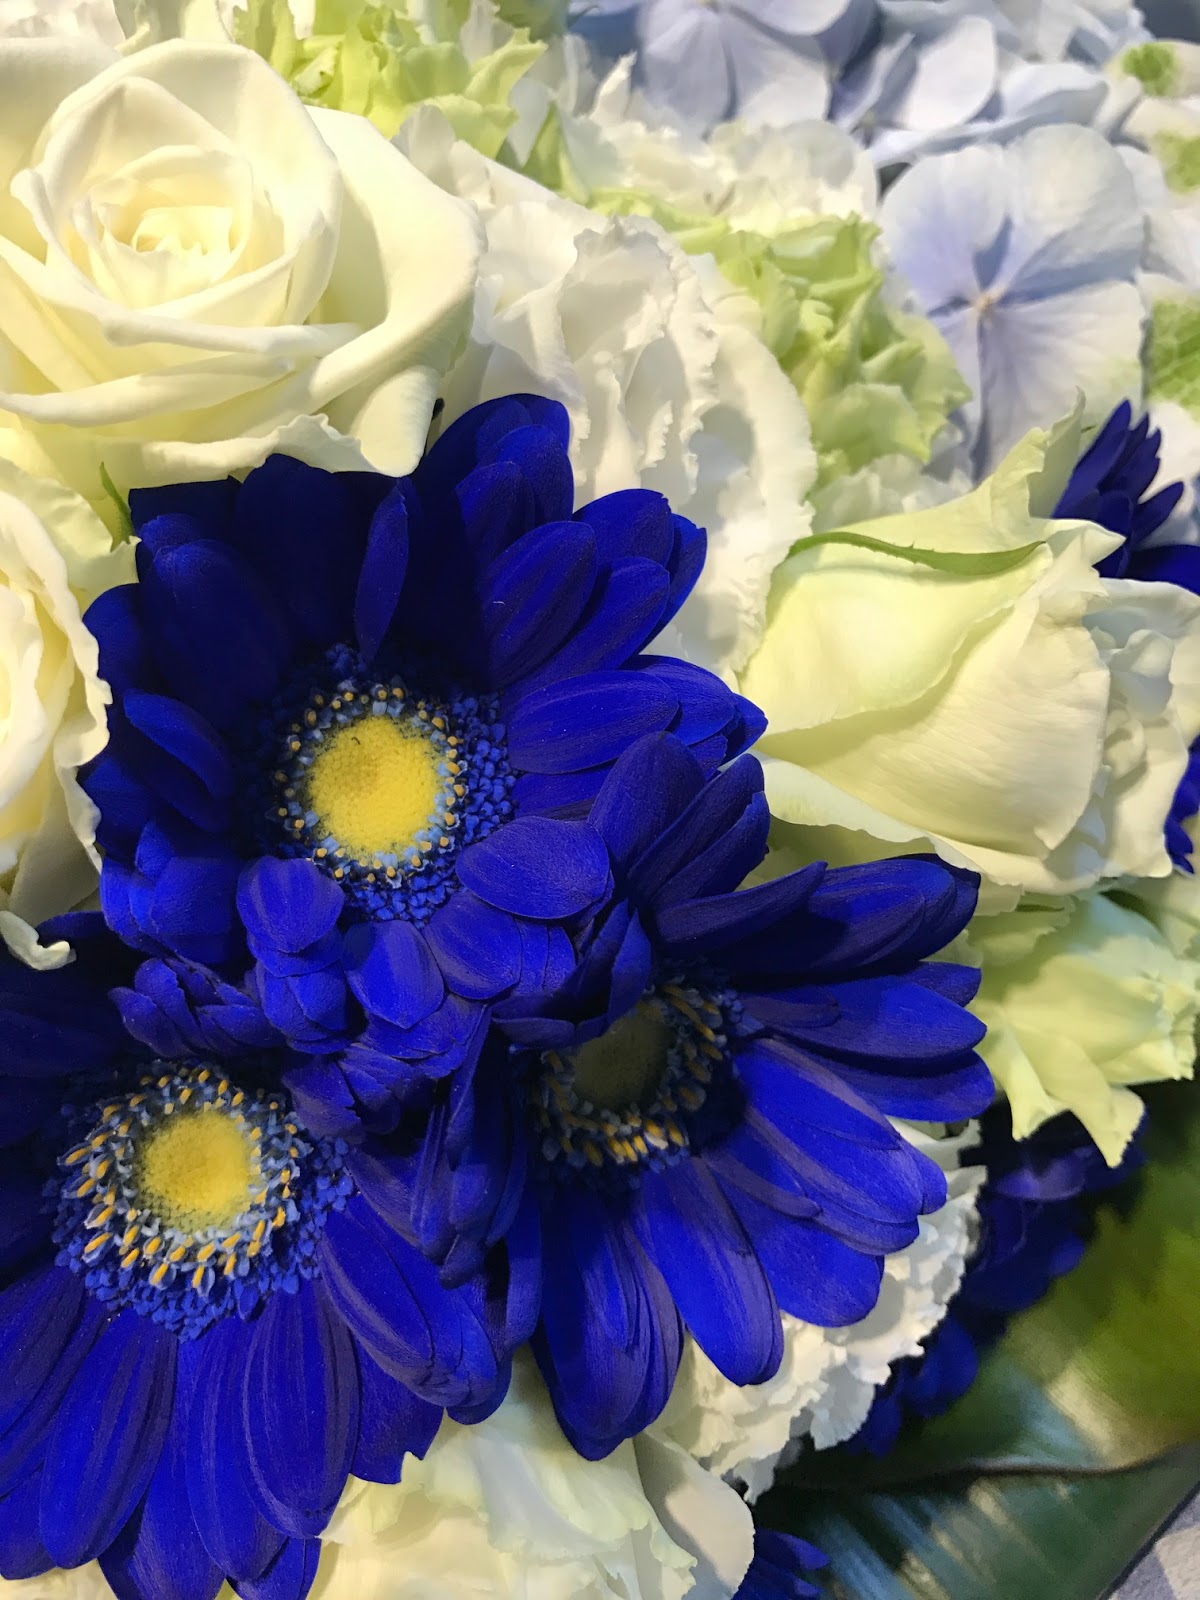 葉織 Haori Flowers 新宿区のお花屋さん 青い花を使用した花束